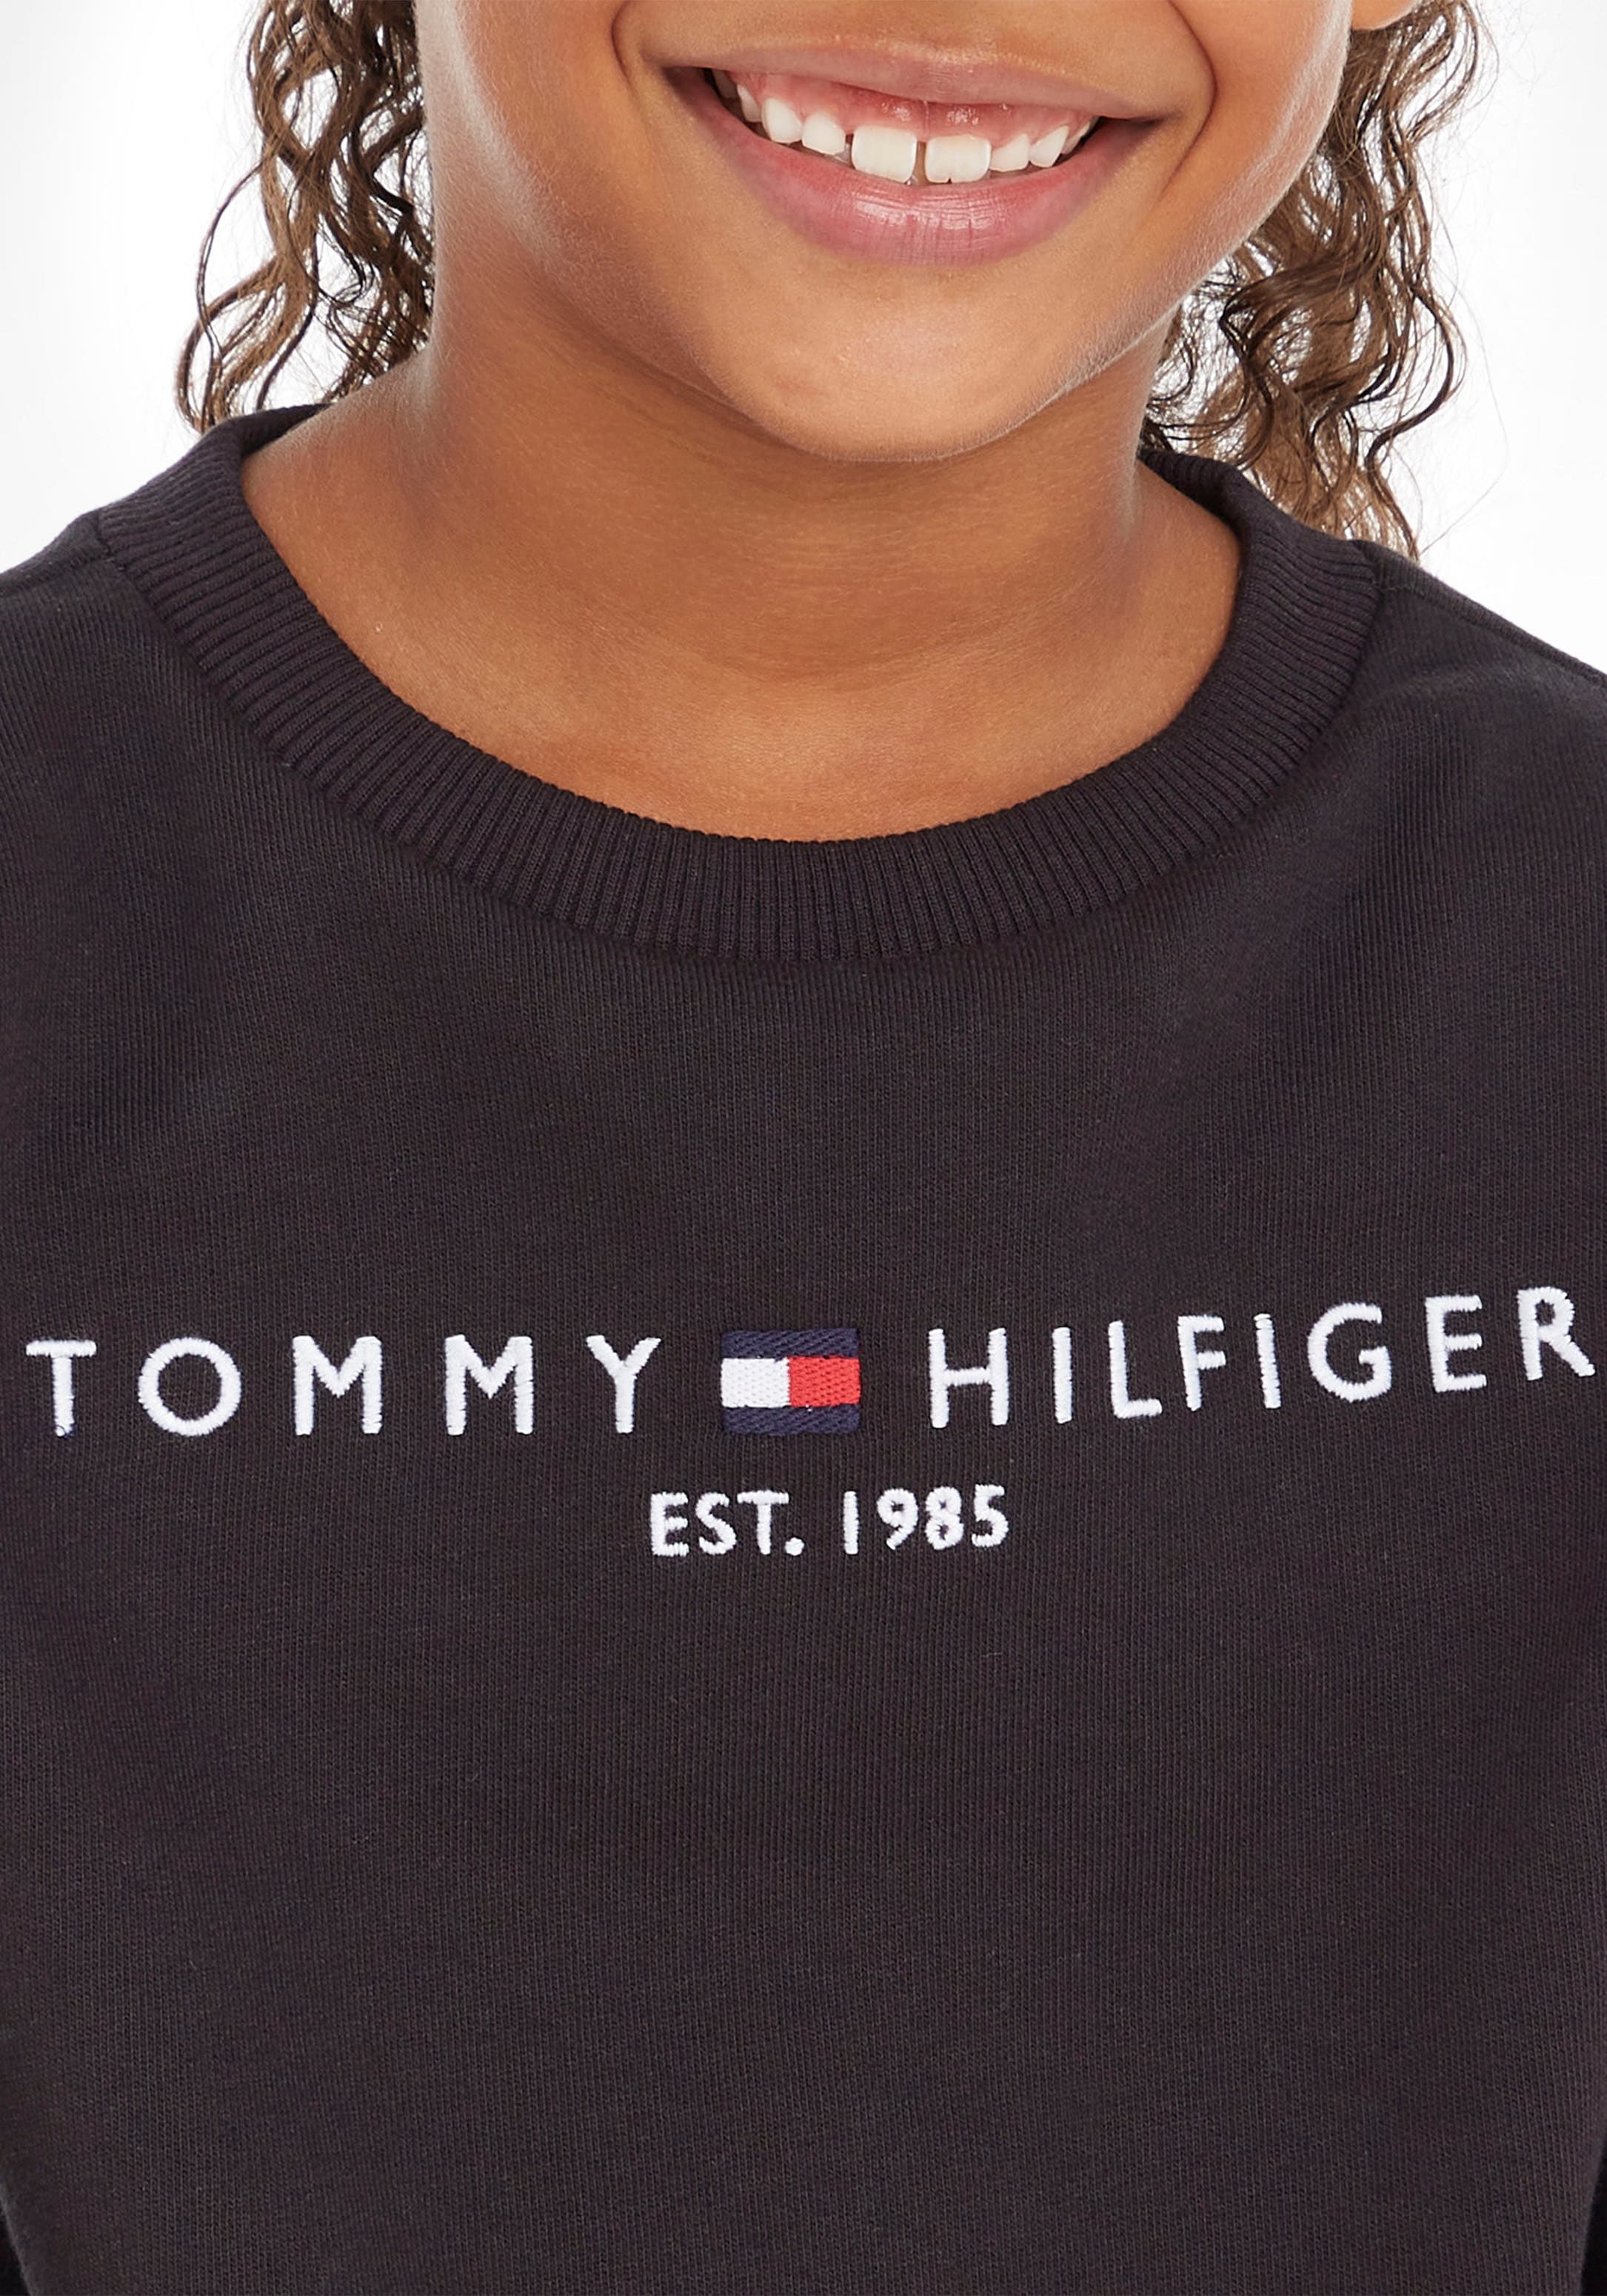 Tommy Hilfiger Sweatshirt »ESSENTIAL SWEATSHIRT«, für Jungen und Mädchen